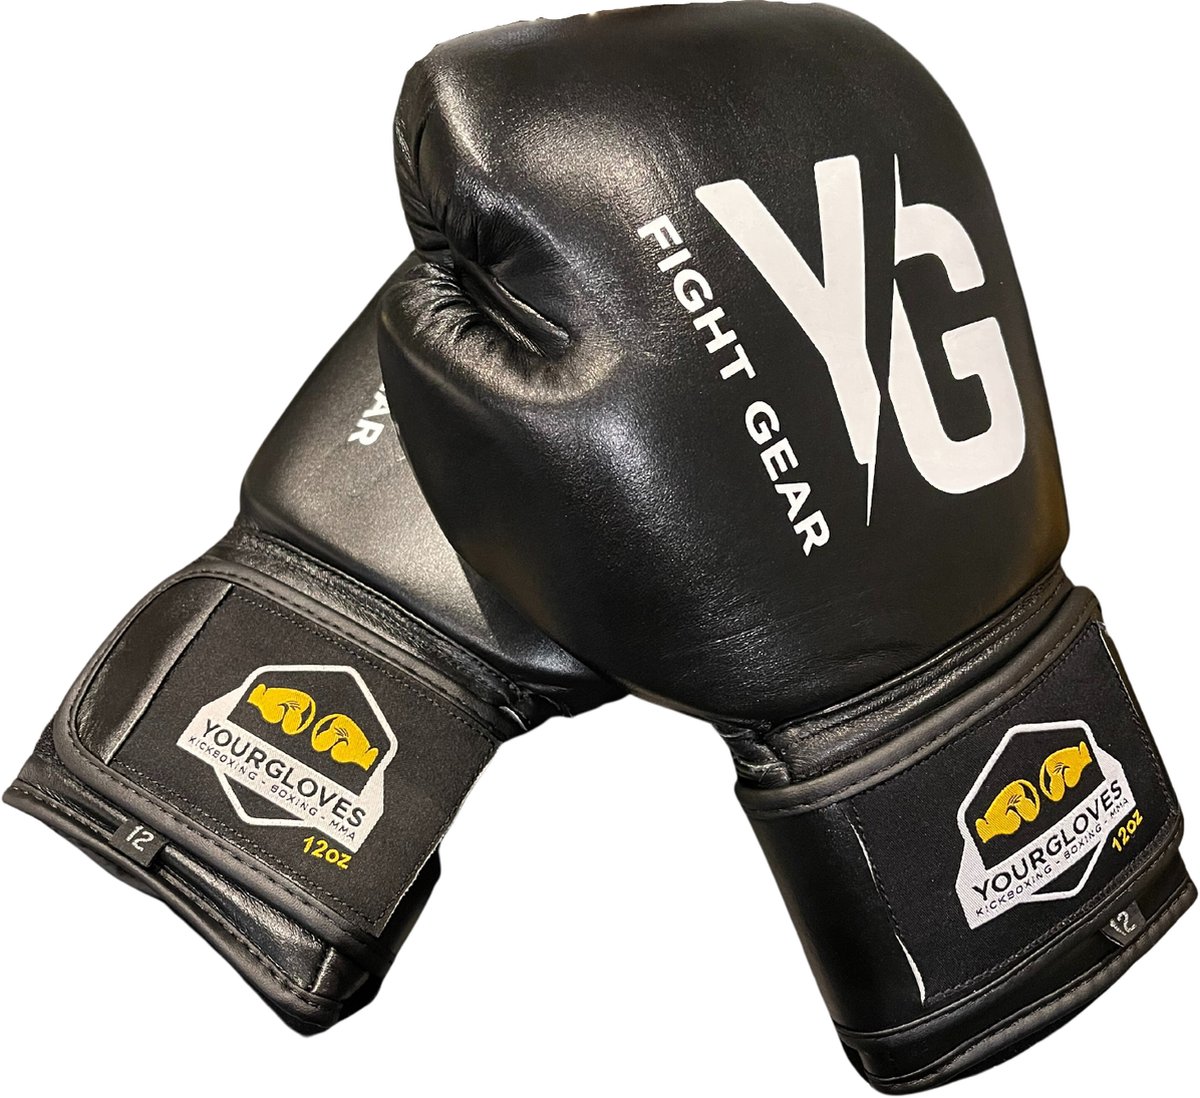 Kickbokshandschoenen - YourGloves - 14OZ -bokshandschoenen Dames - Heren - Vechtsport - Zwart